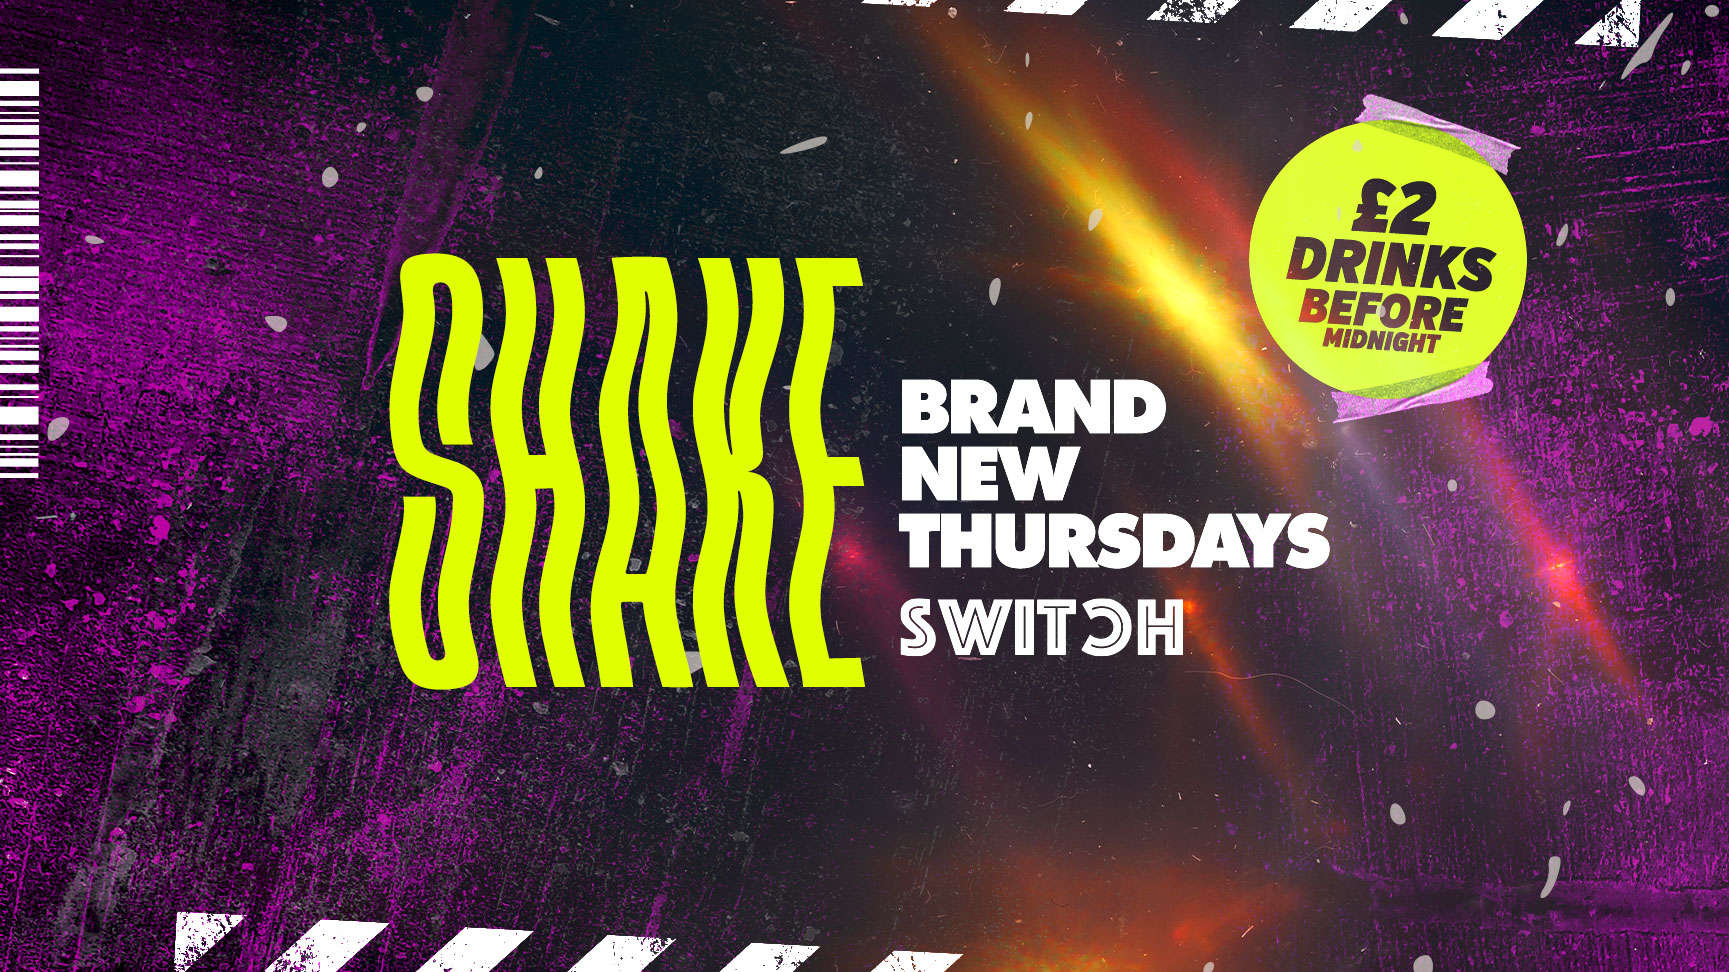 SHAKE | Preston’s Brand New Thursday | £2 DRINKS | Easter Thursday